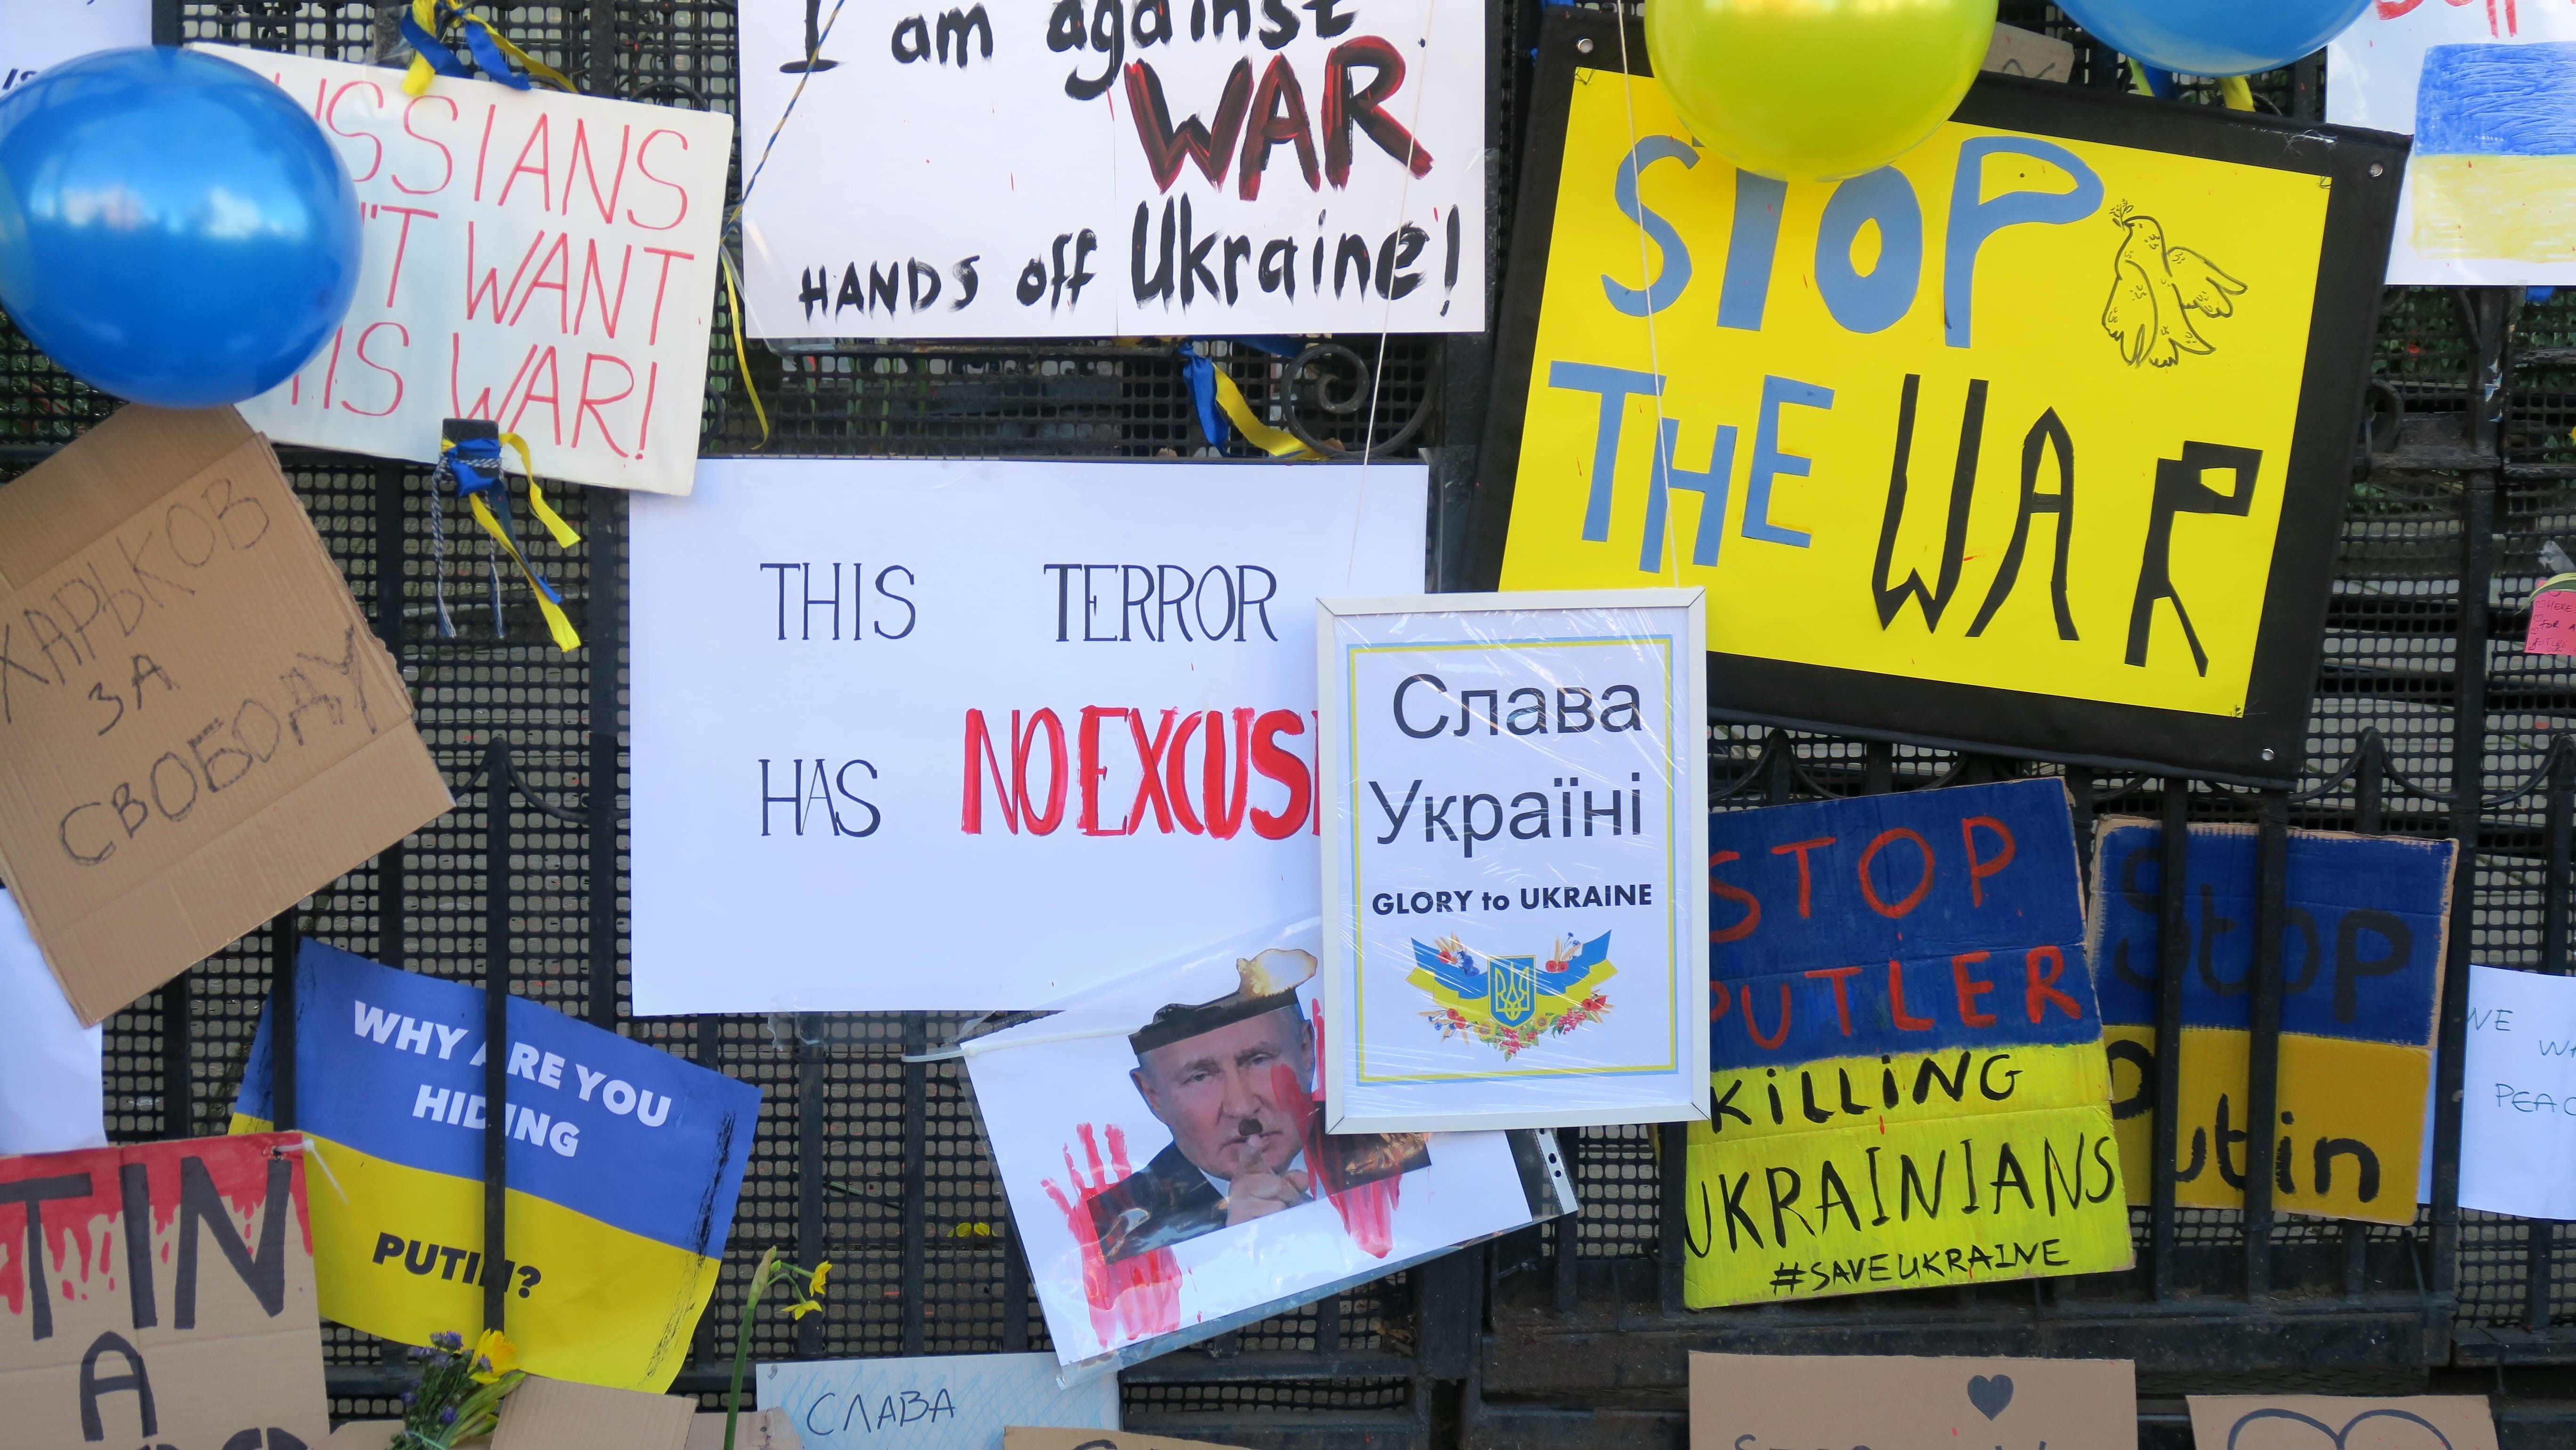 As Atividades de Influência Pré-Invasão Russas na Guerra com a Ucrânia